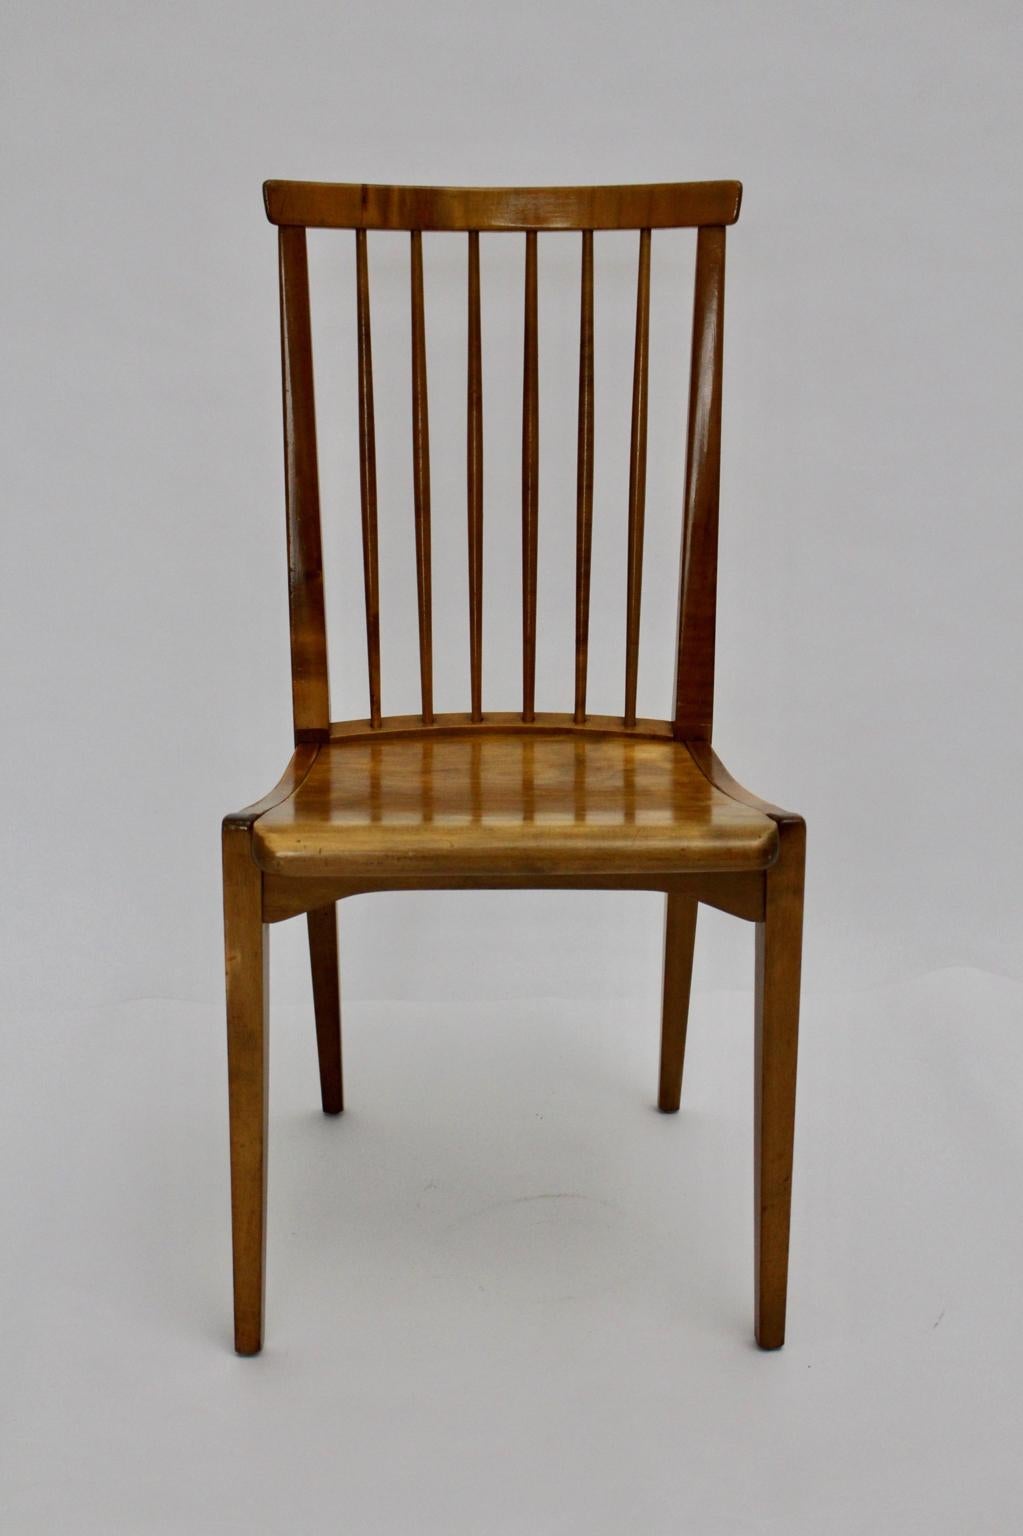 Brauner Mid Century Modern Stuhl oder Beistellstuhl, entworfen von Otto Niedermoser und ausgeführt von Thonet Austria, um 1950.
Das Papieretikett mit dem Firmenschriftzug Thonet ist unten beschriftet
Auch der Stuhl wurde aus honigfarbenem massivem